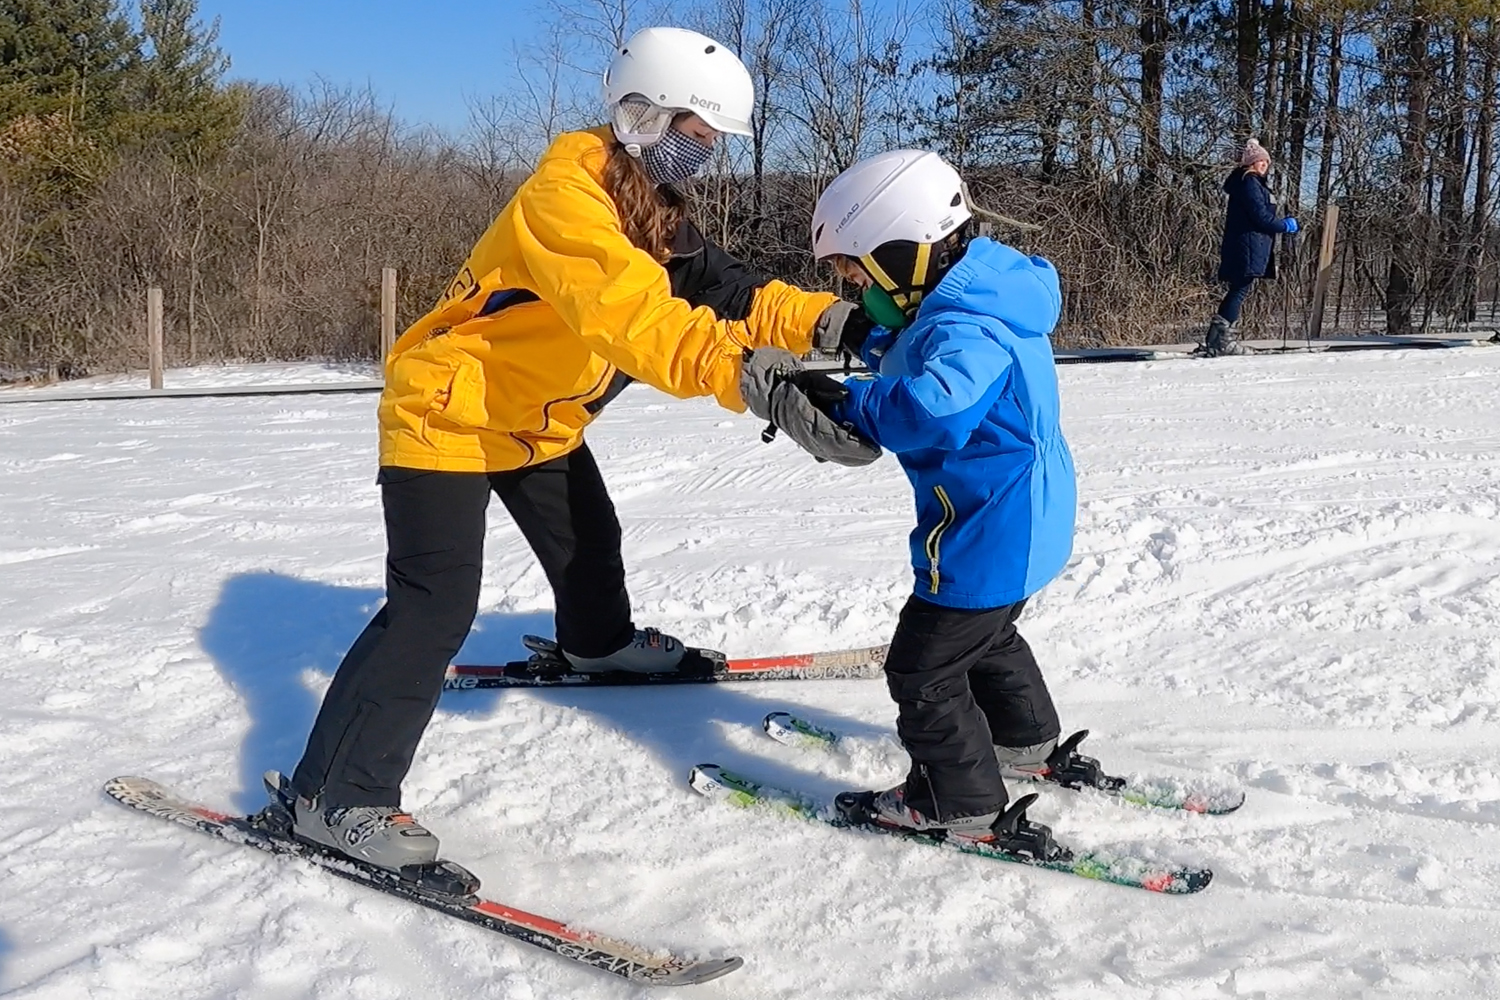 Winter Ski & Board Pants-Kids Ski Bib, Ages 4-7